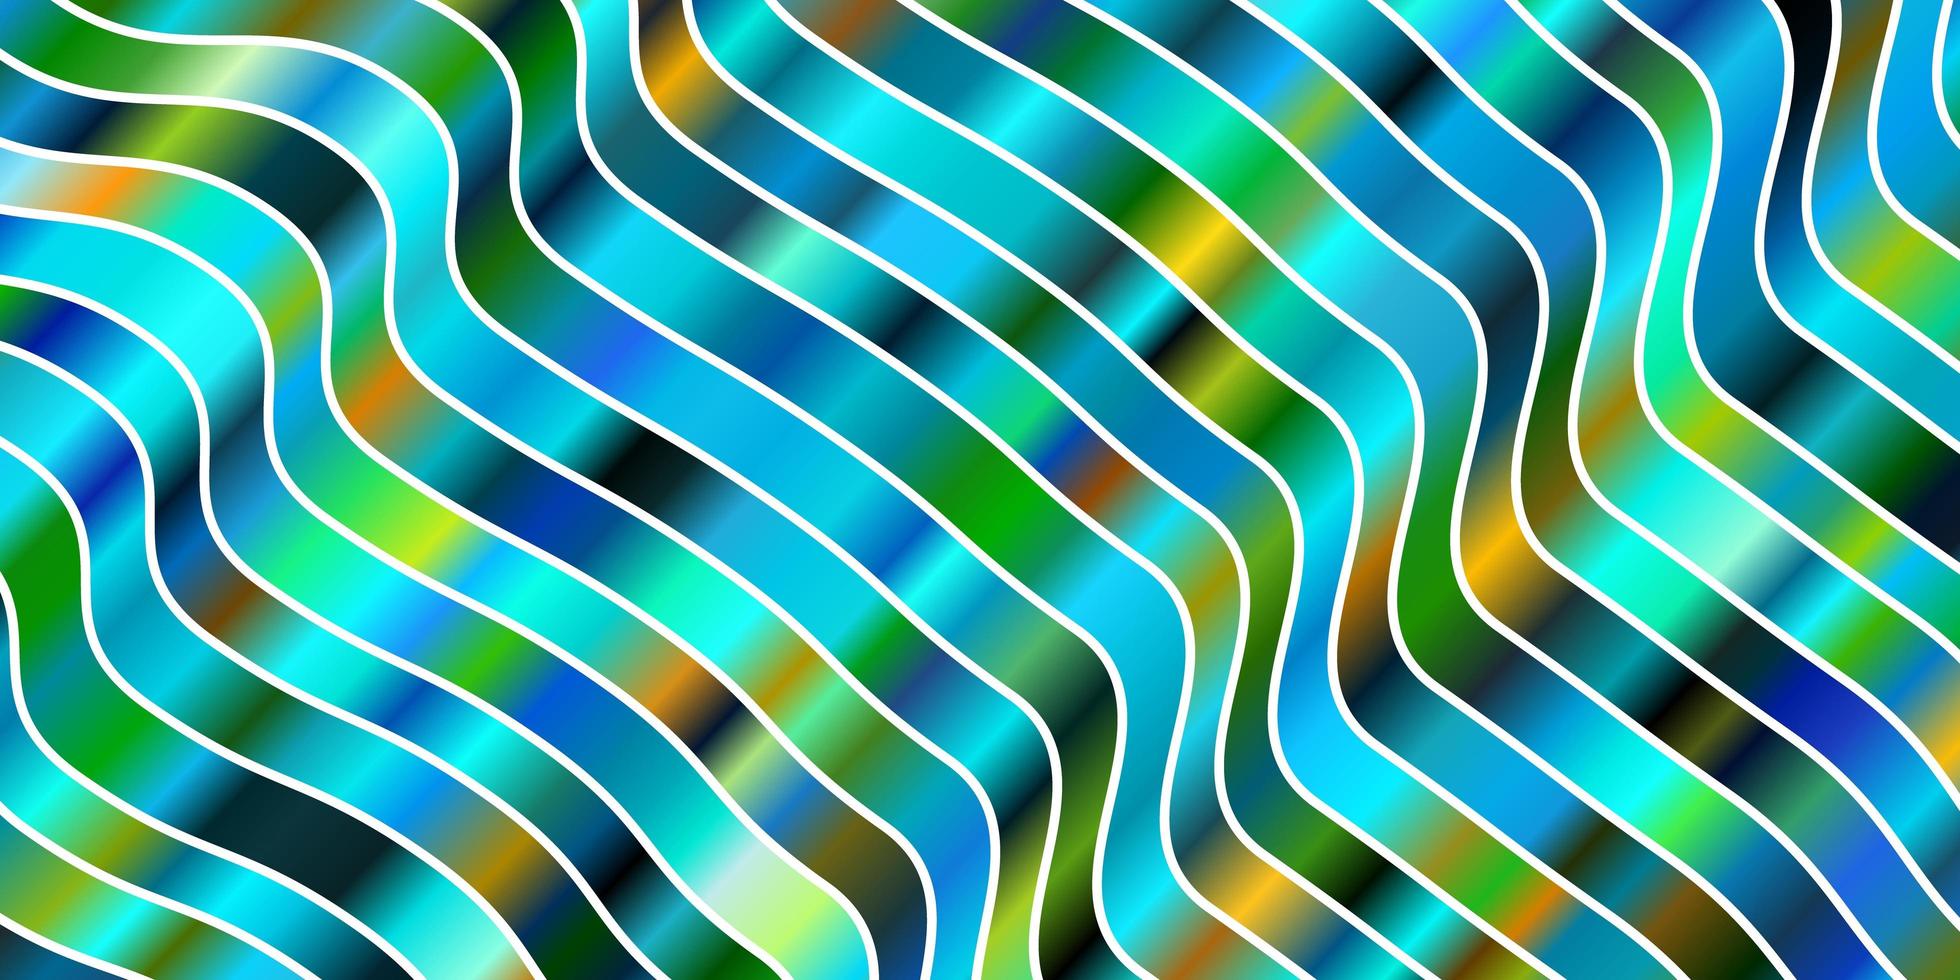 ljusblå, grön vektorlayout med sneda linjer. färgglad illustration i cirkulär stil med linjer. mönster för affärshäften, broschyrer vektor